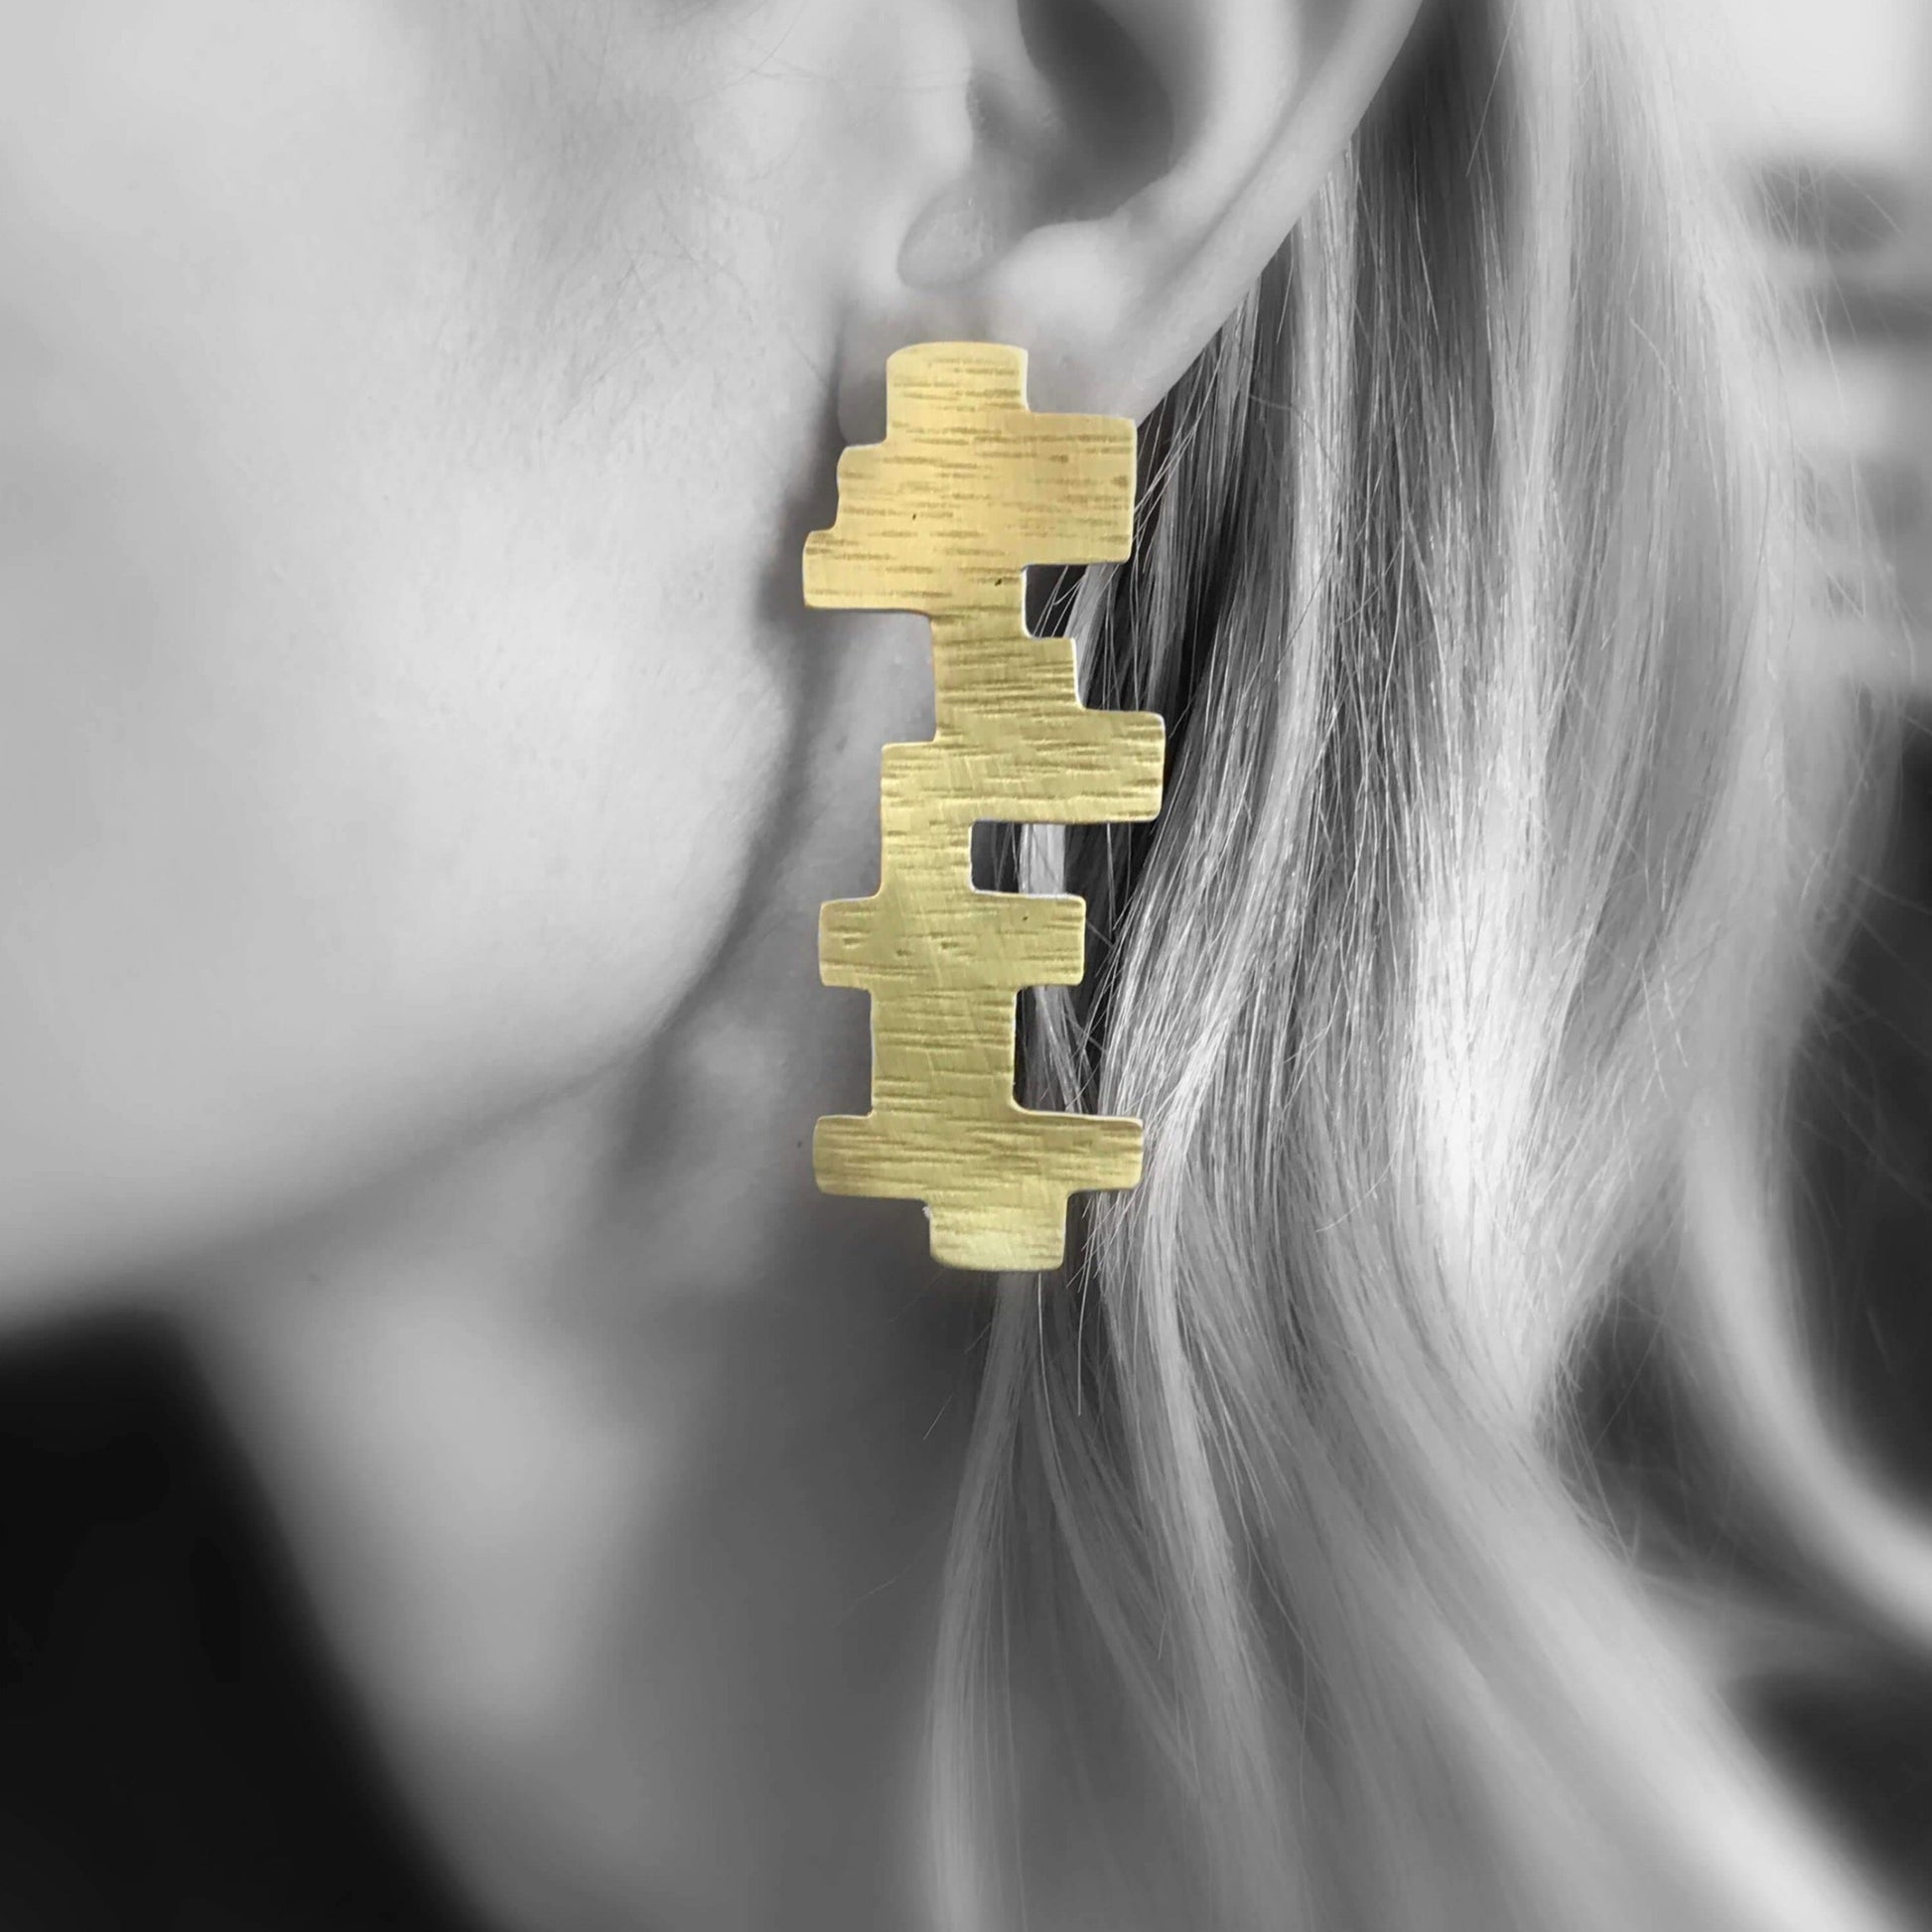 Brass earrings | Yellow Tsakana Earrings - CURIUDO